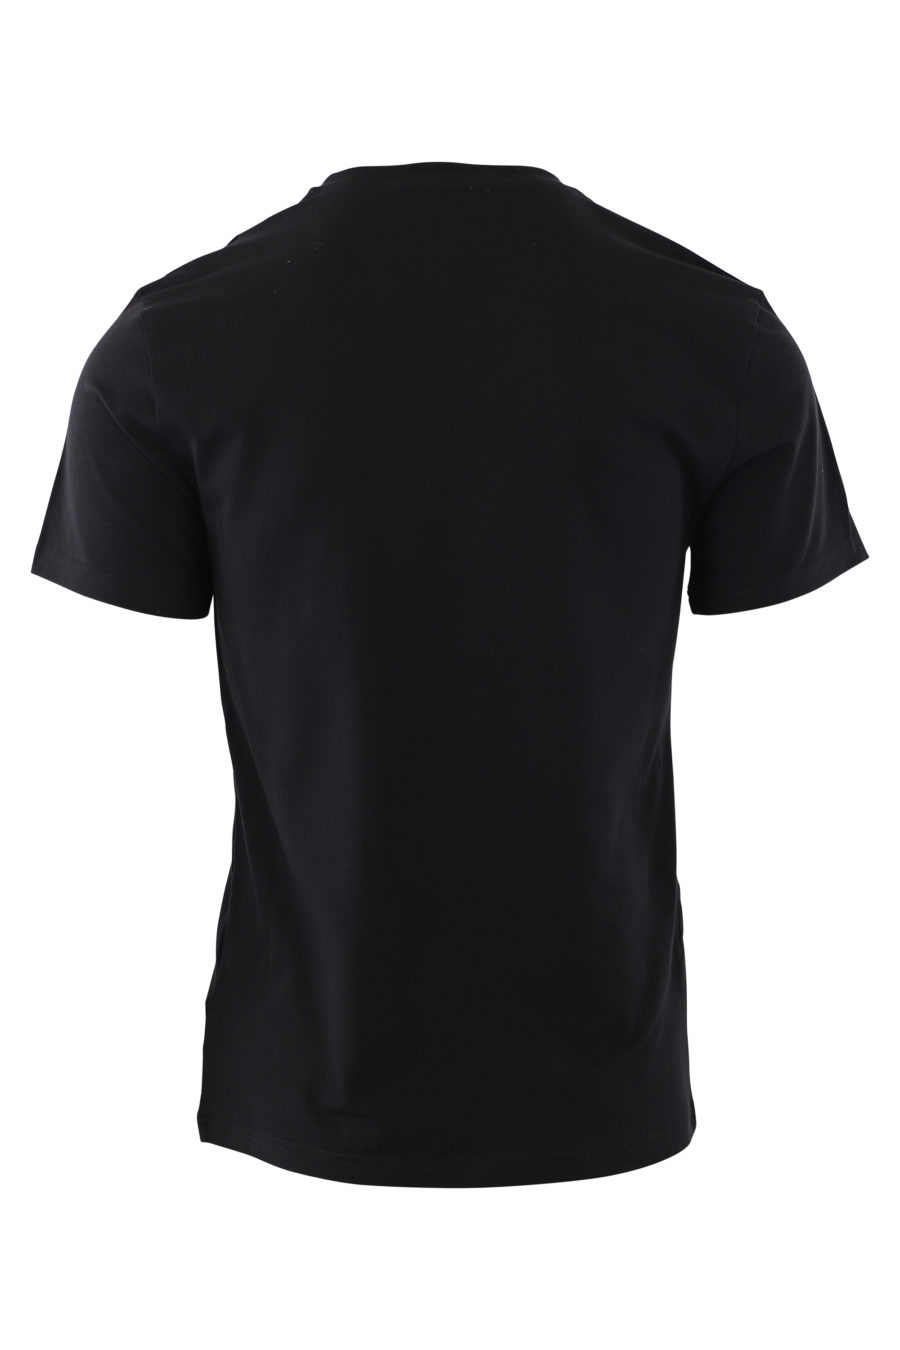 T-shirt noir avec grand logo sur le devant - IMG 2024